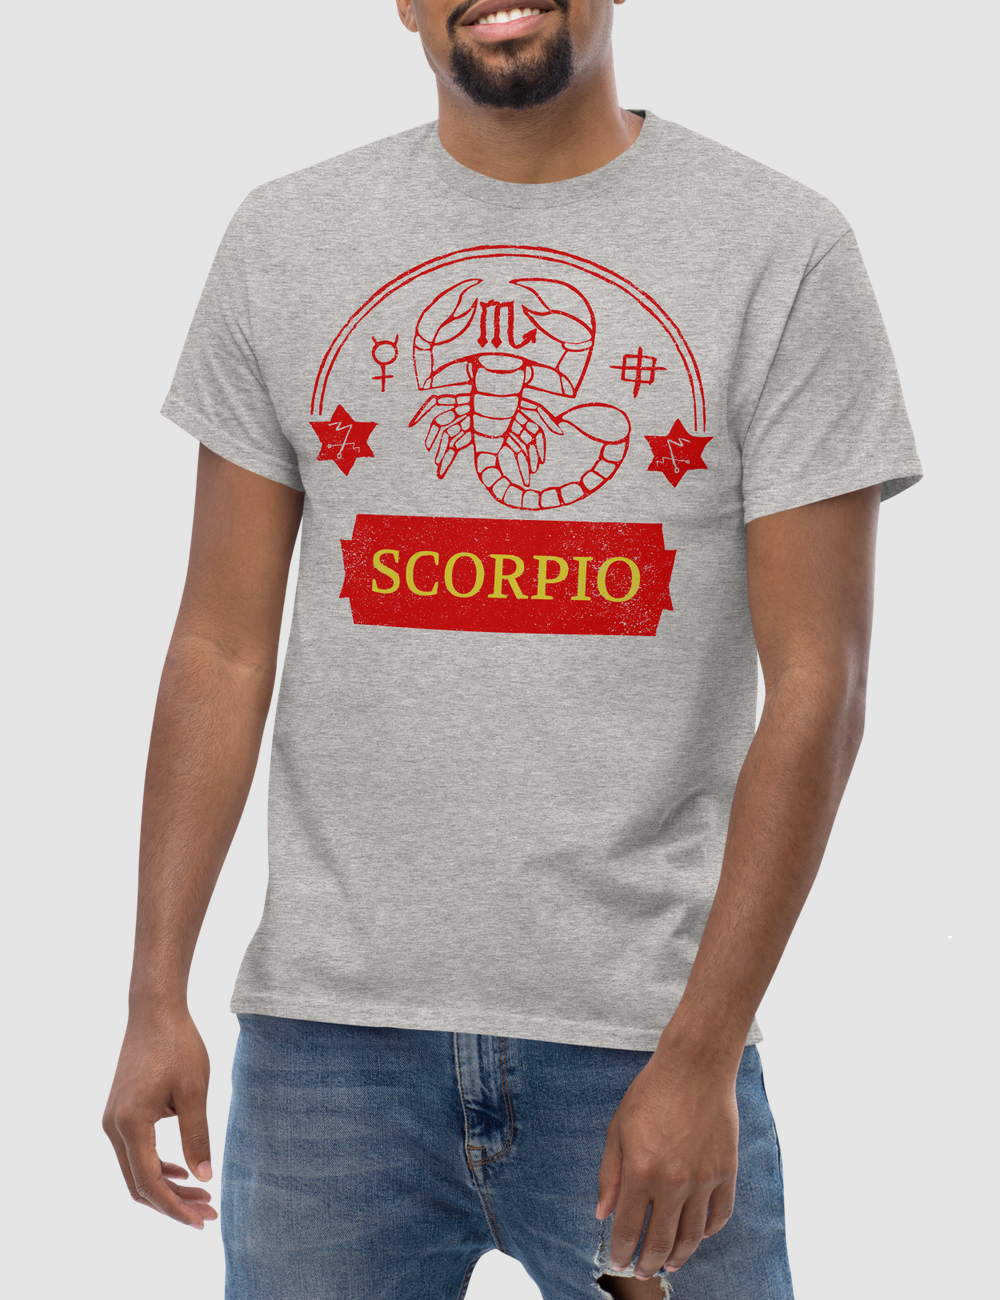 Scorpio | T-Shirt OniTakai